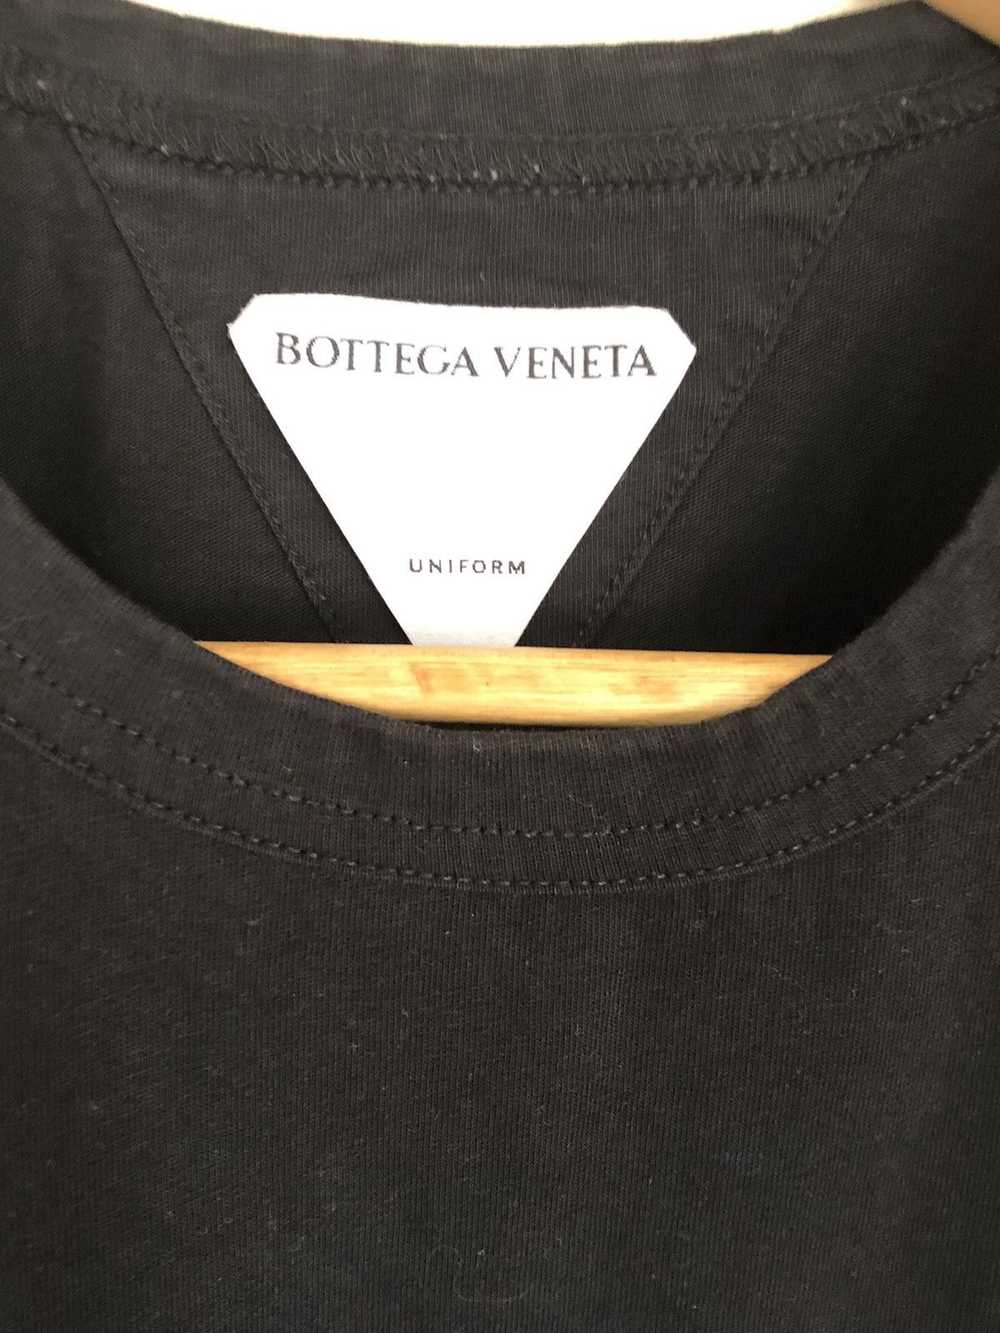 Bottega Veneta Bottega tank top shirt large - image 3